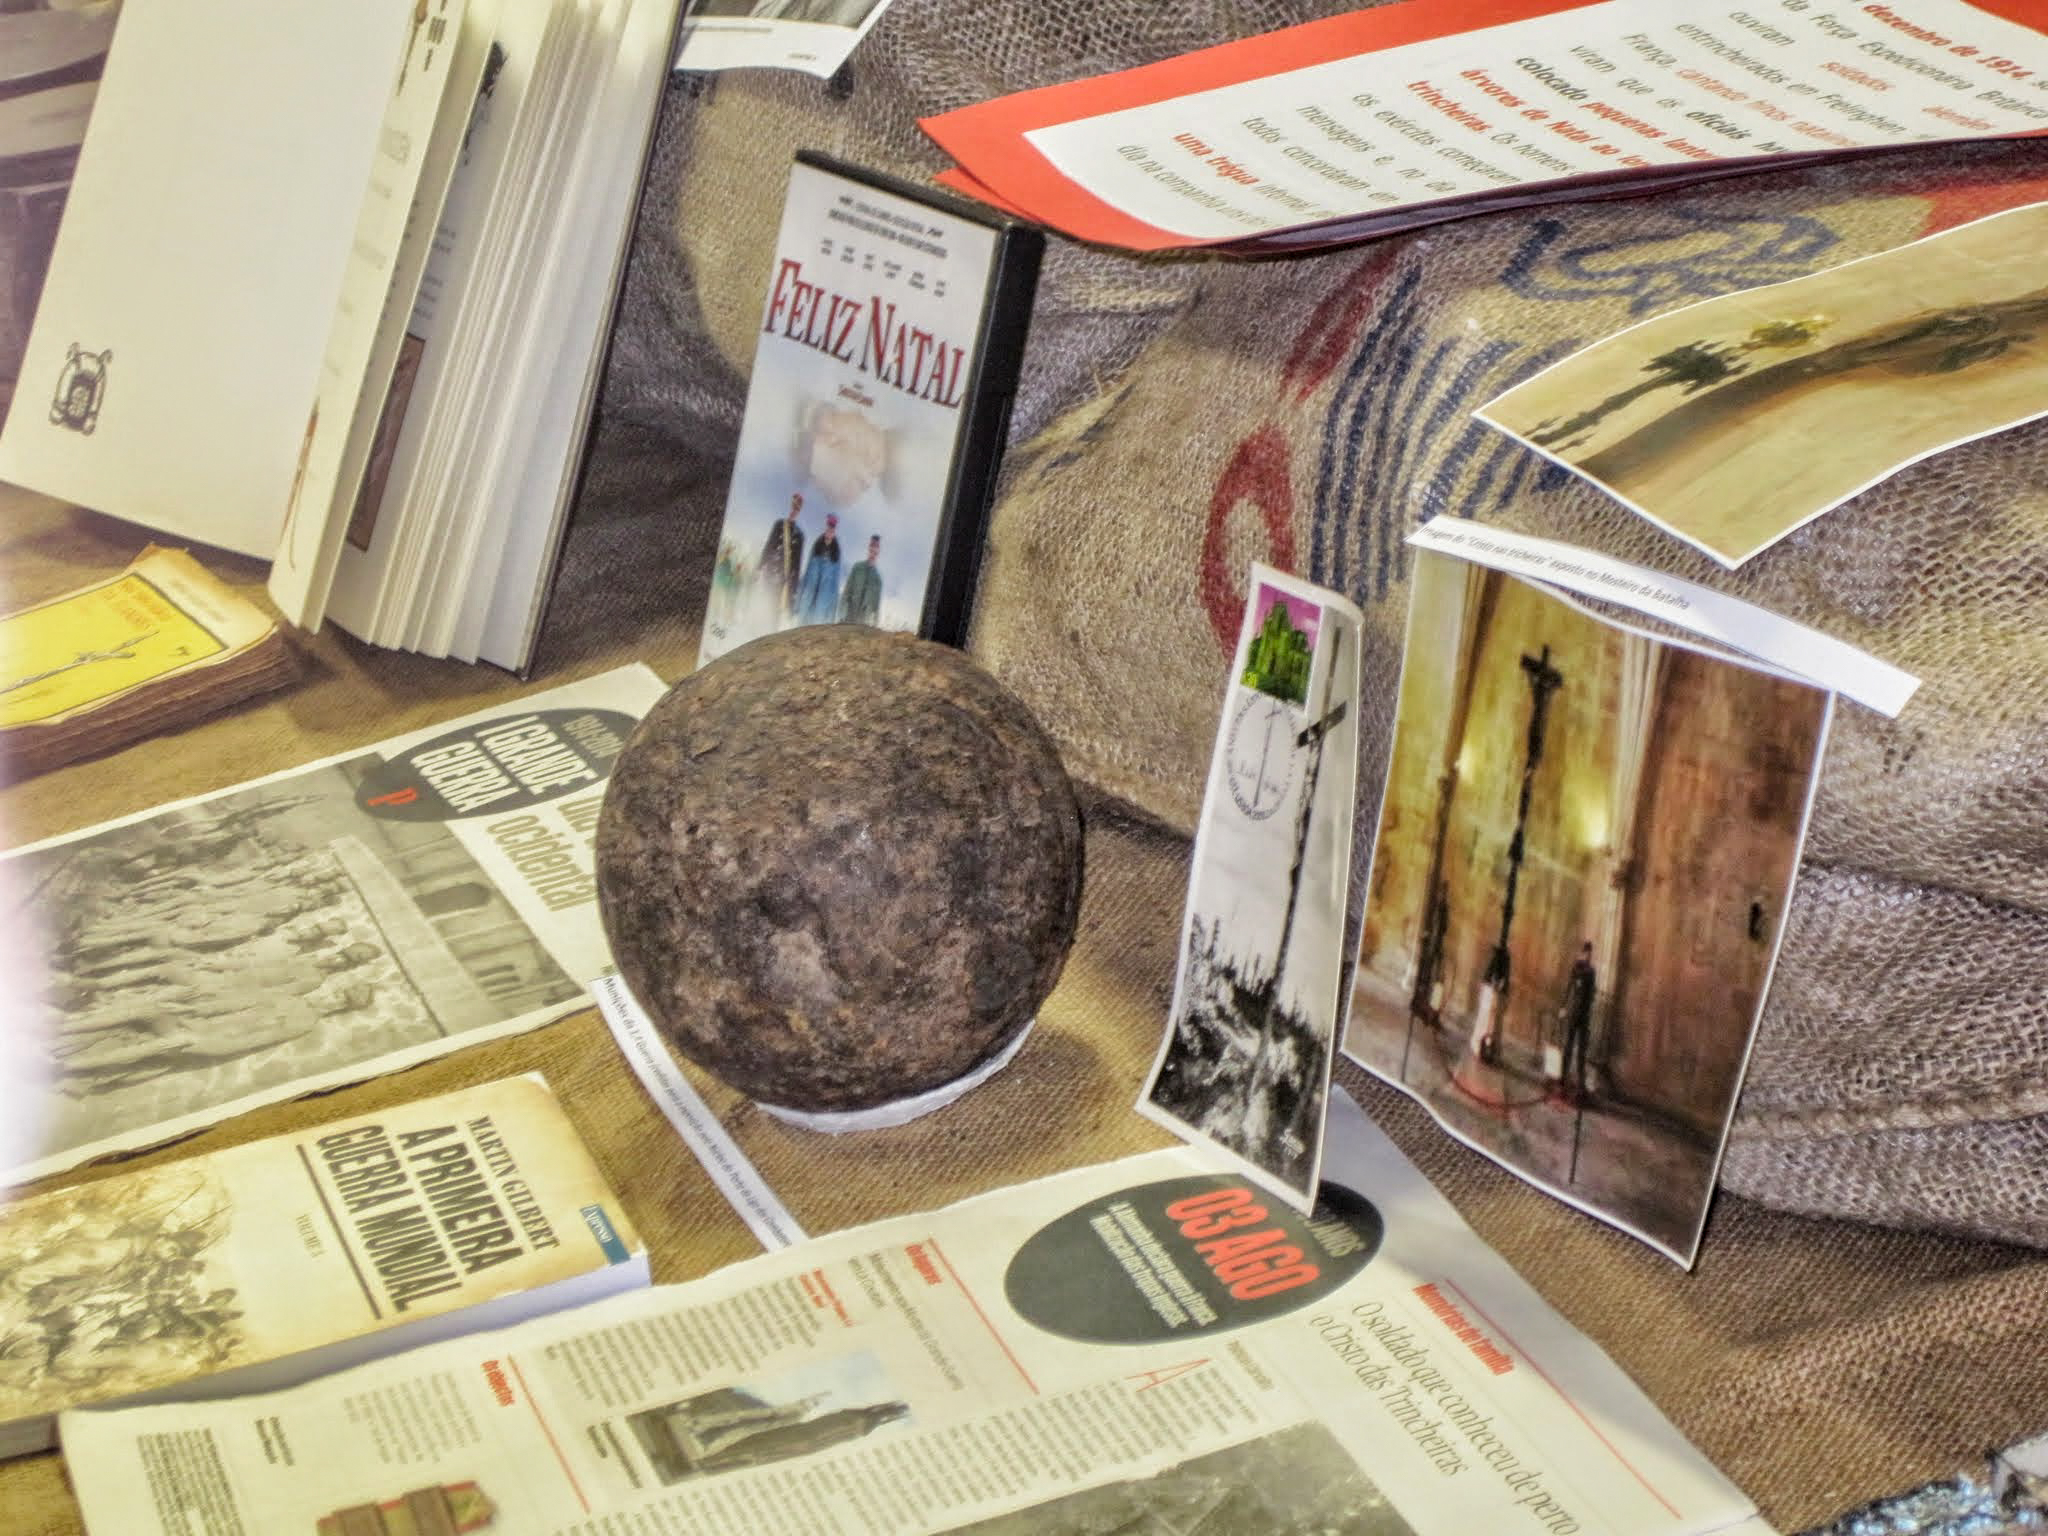 “A 1ª Guerra Mundial: História e histórias” – objetos expostos